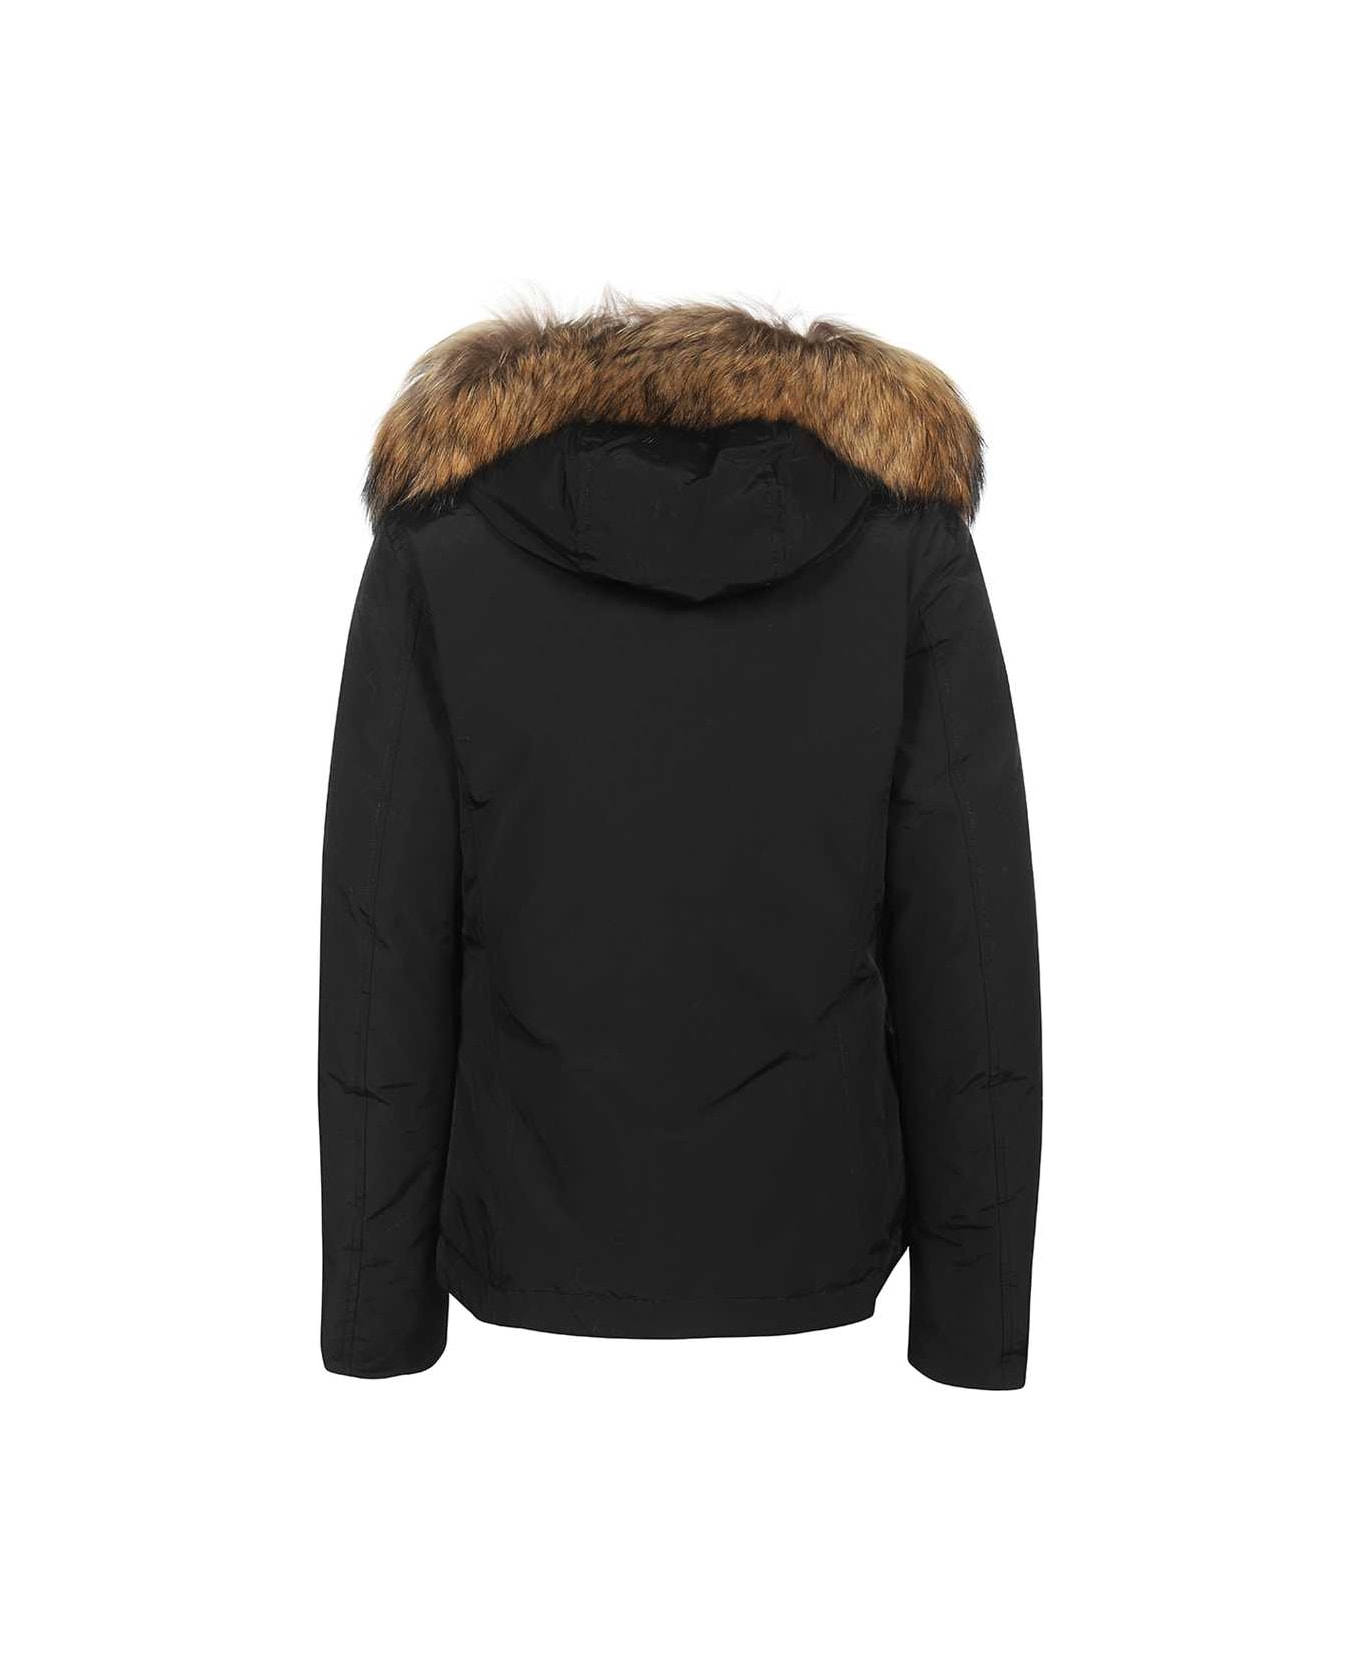 Woolrich Fur Hood Short Parka - black